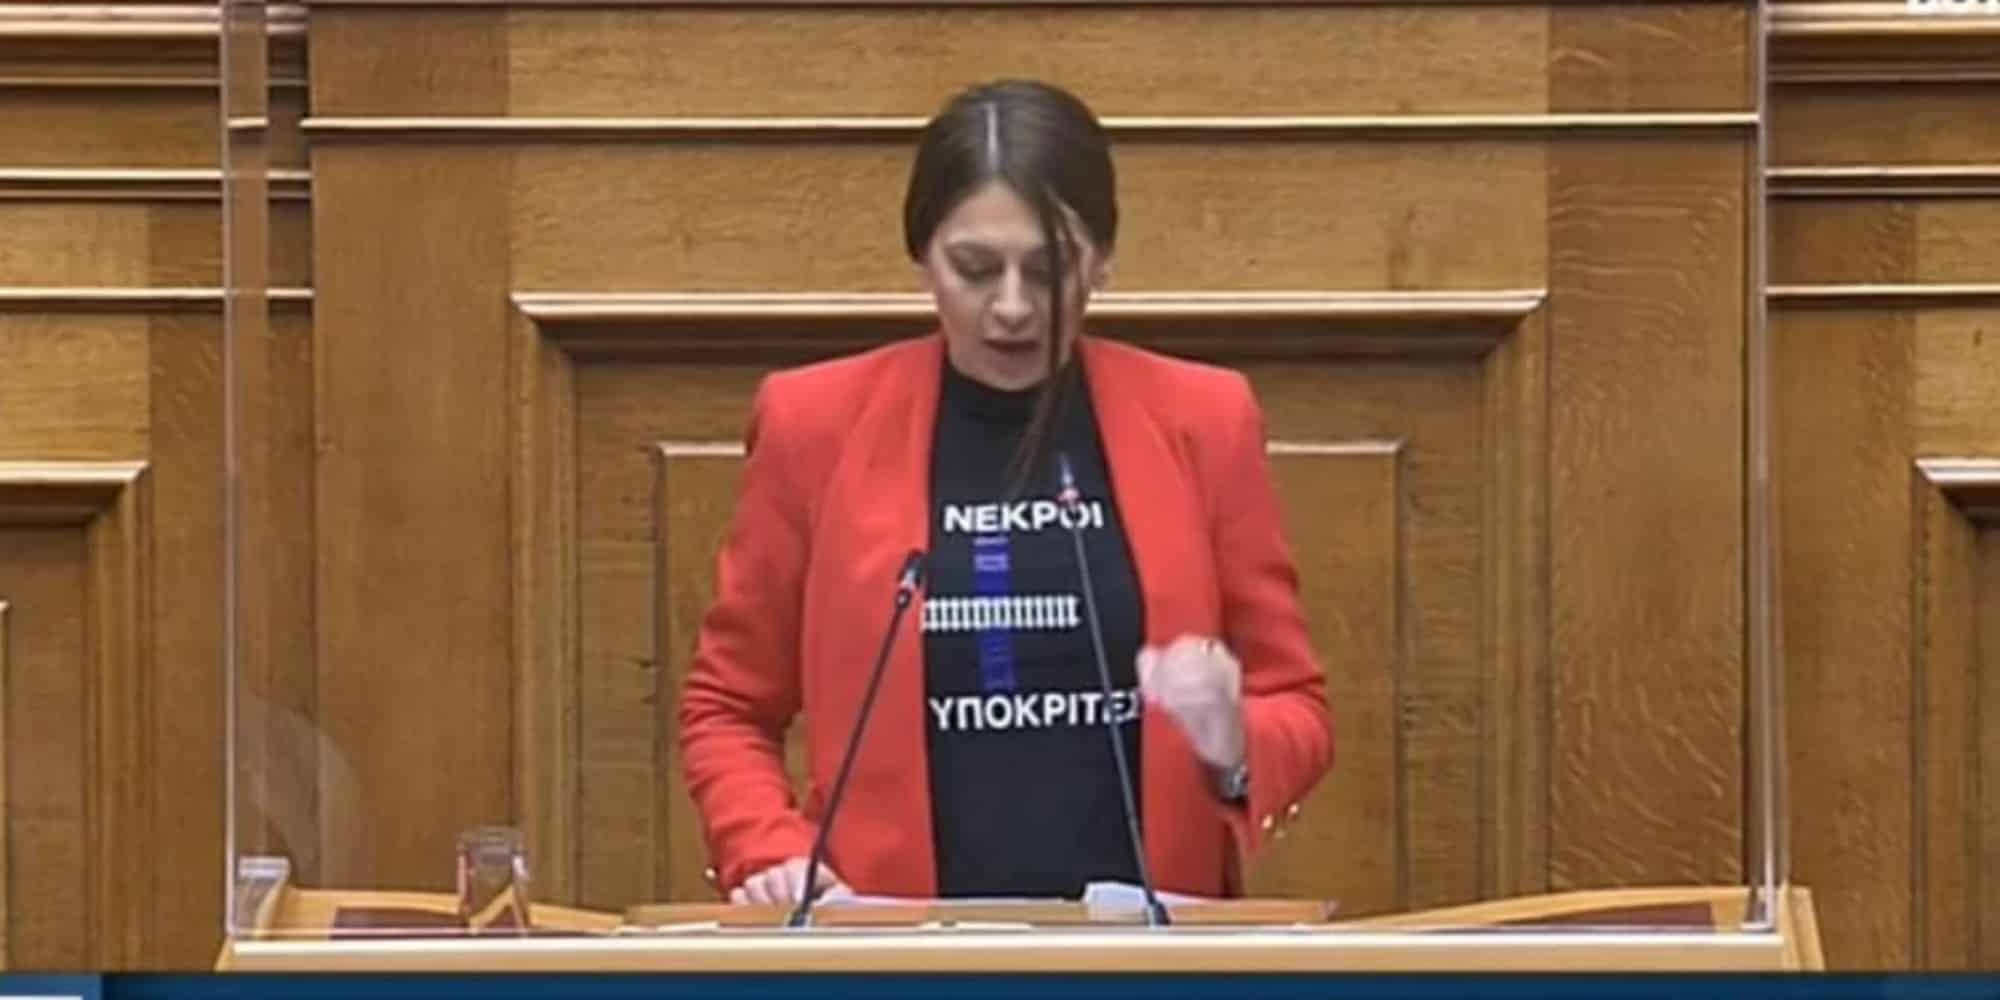 Η βουλευτής του ΜέΡα25, Μαρία Απατζίδη με την μπλούζα για τα Τέμπη στη Βουλή